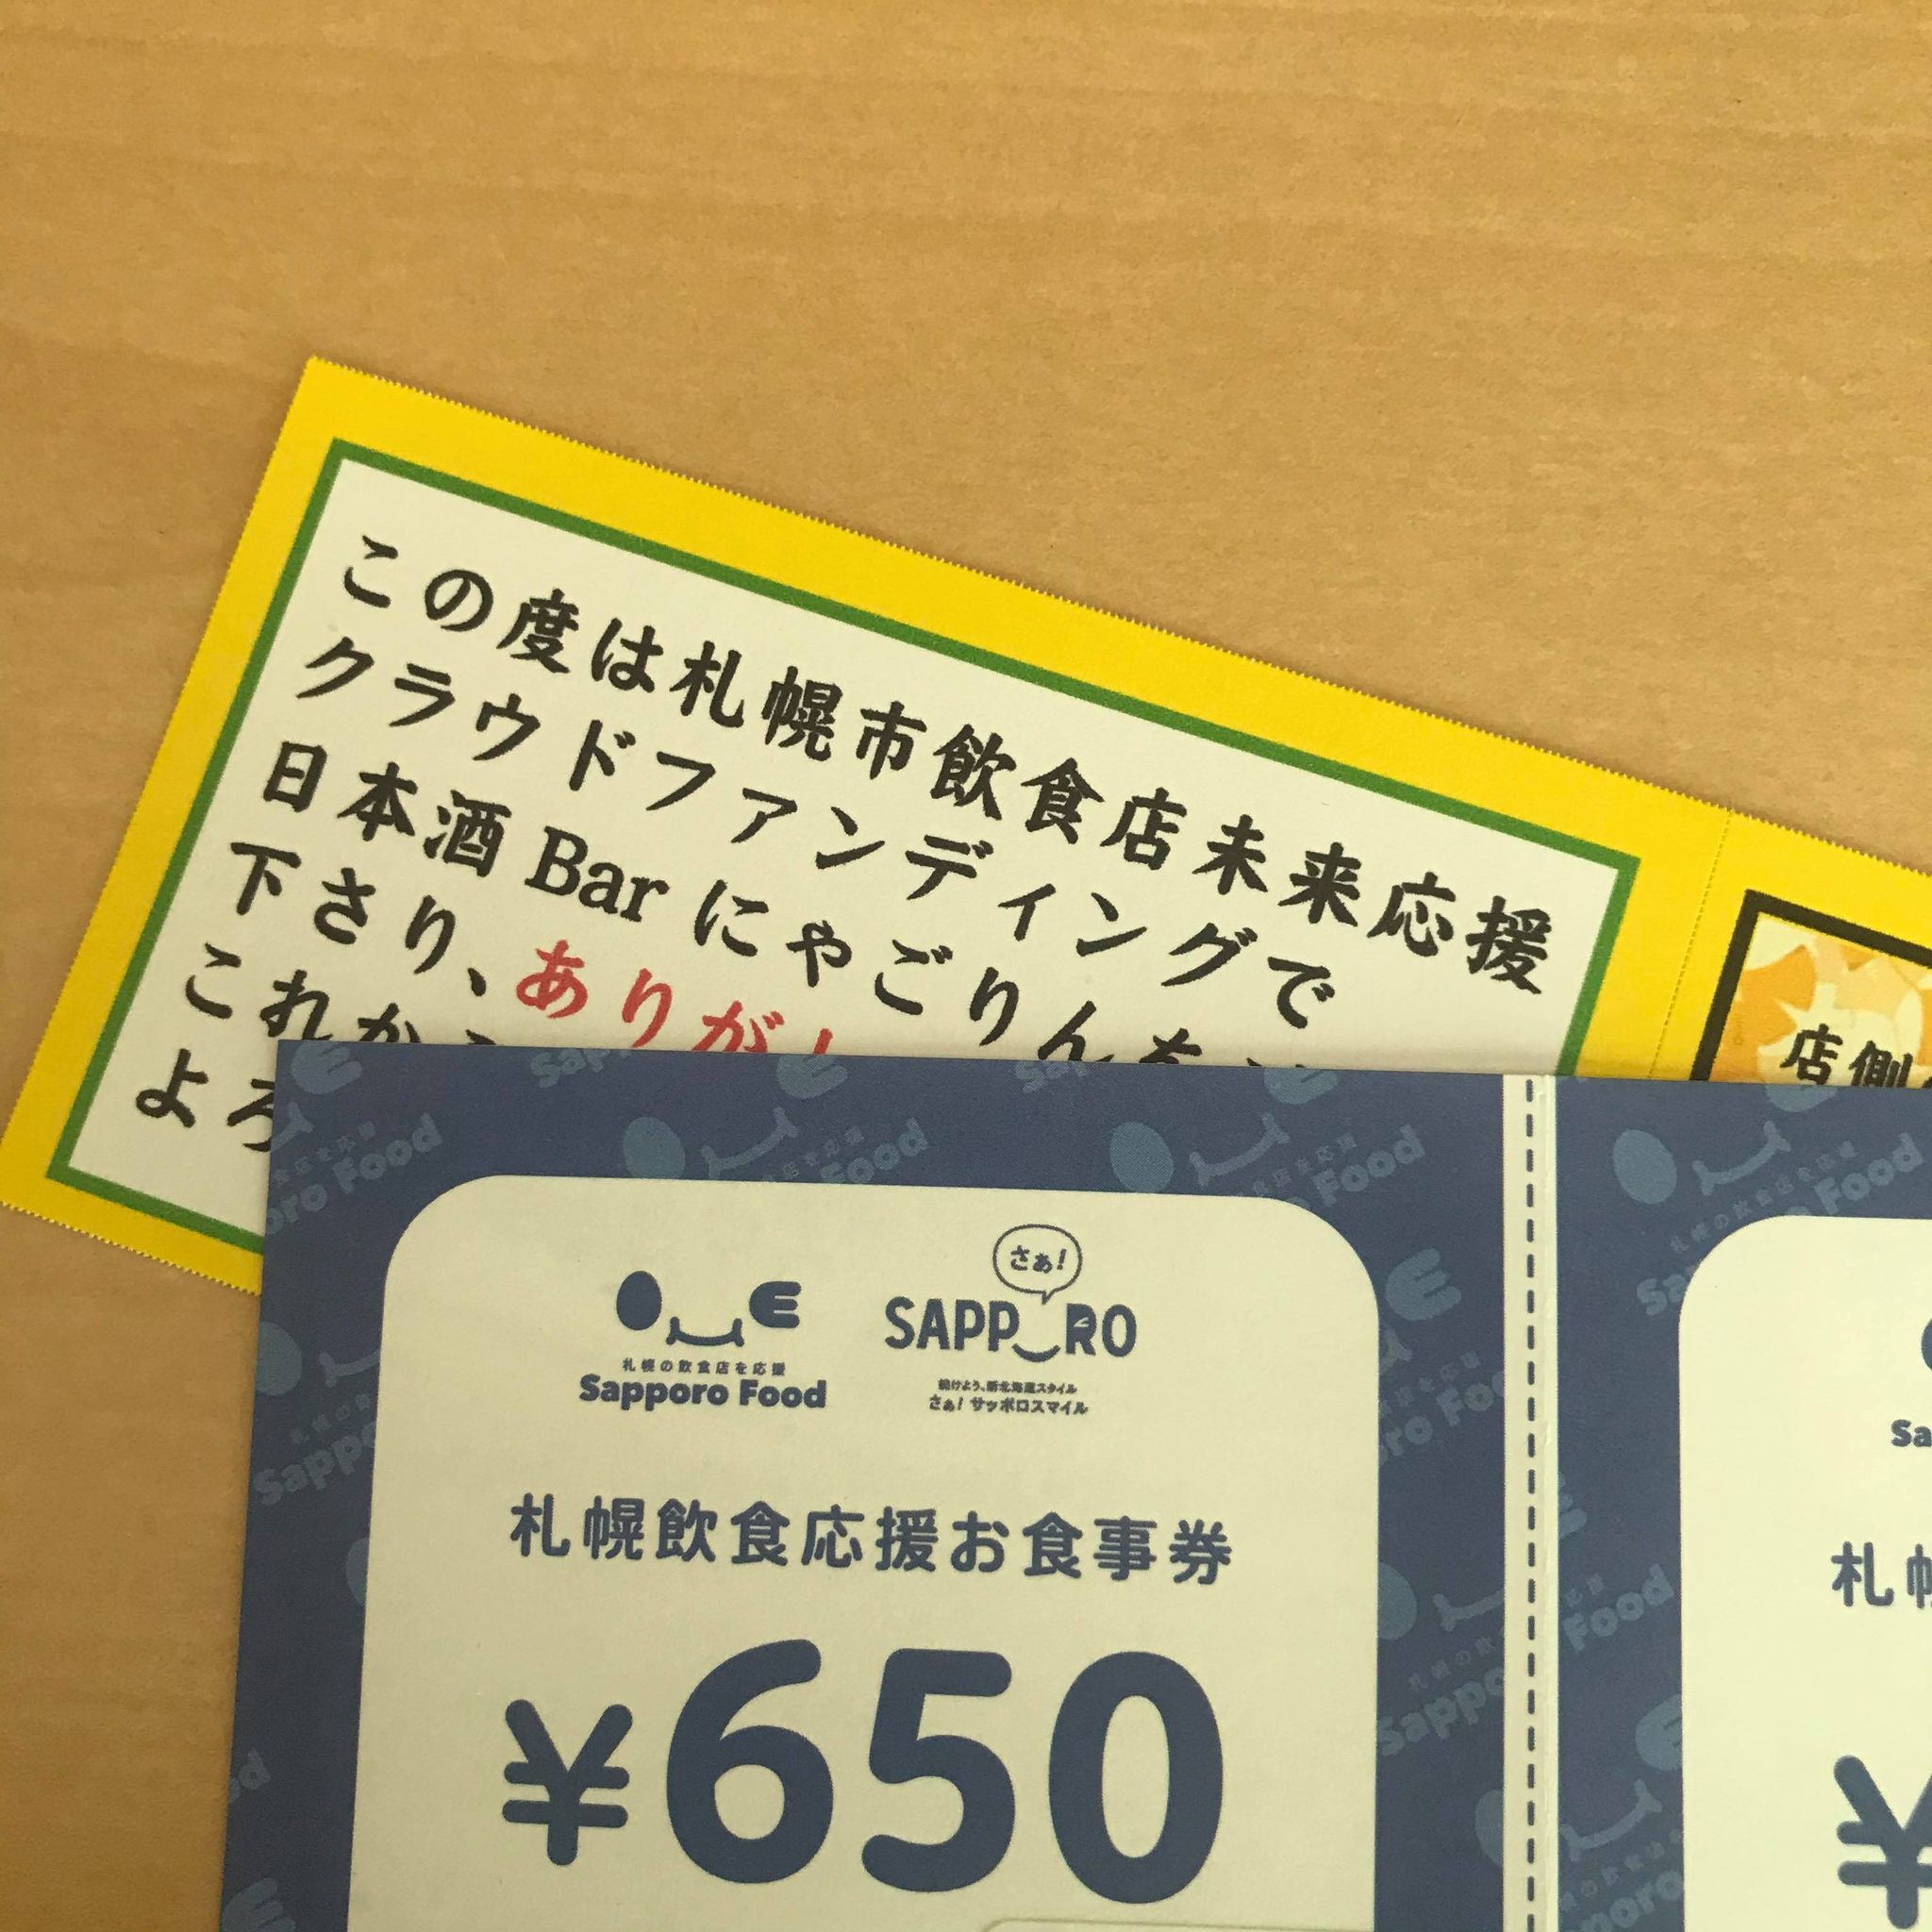 札幌市飲食店未来応援クラウドファンディング第3弾を購入された方への重要なお知らせです。